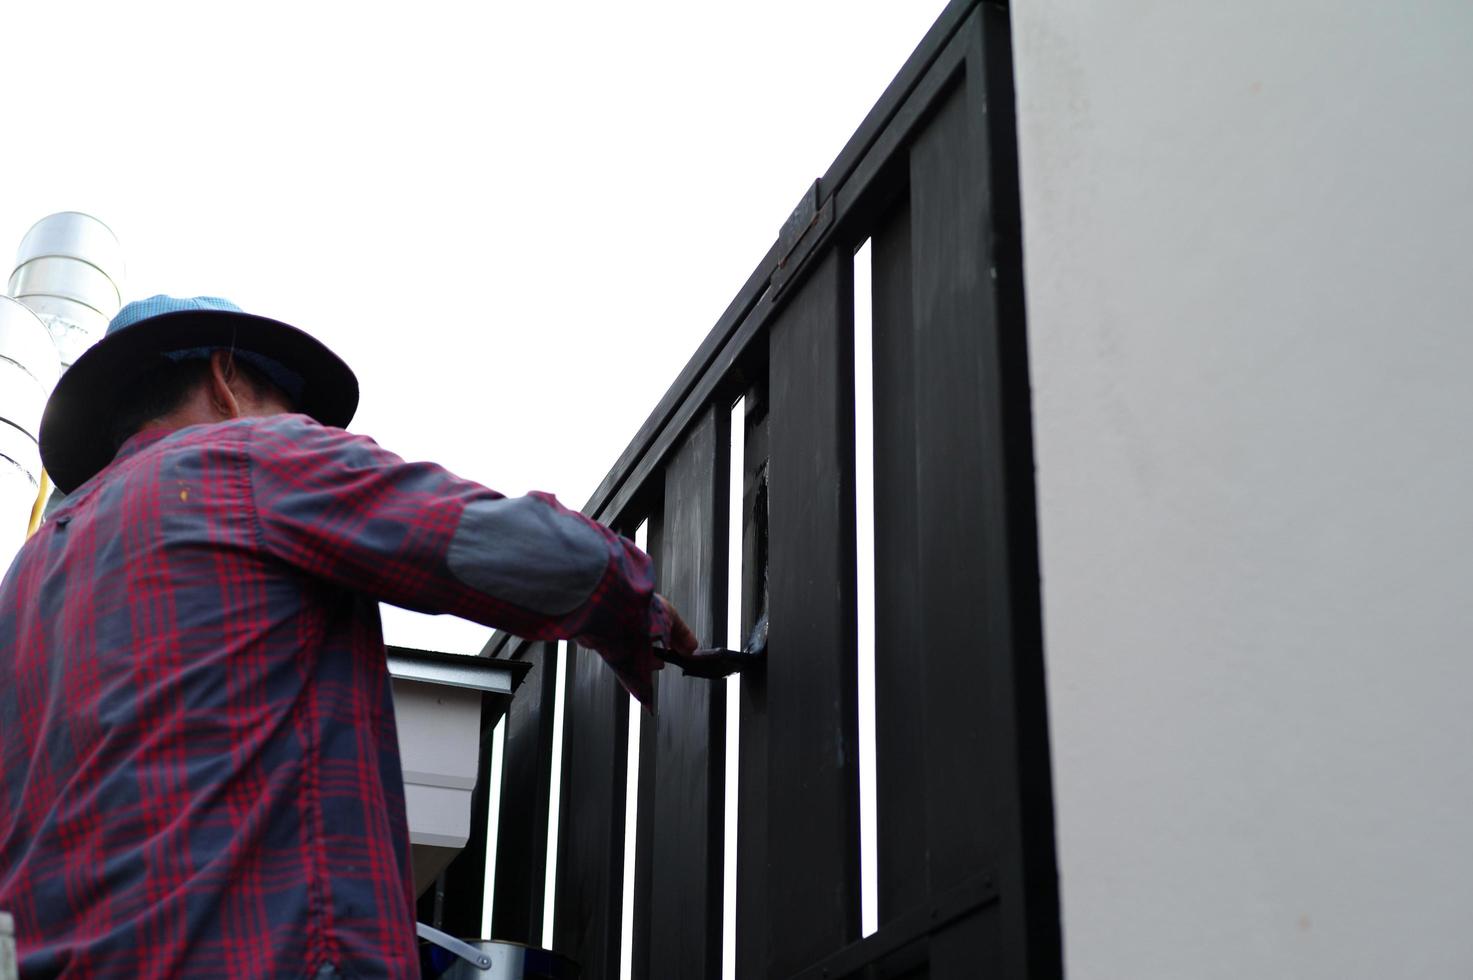 motie wazig hand van werknemer schilderij zwarte kleur op het stalen hek foto